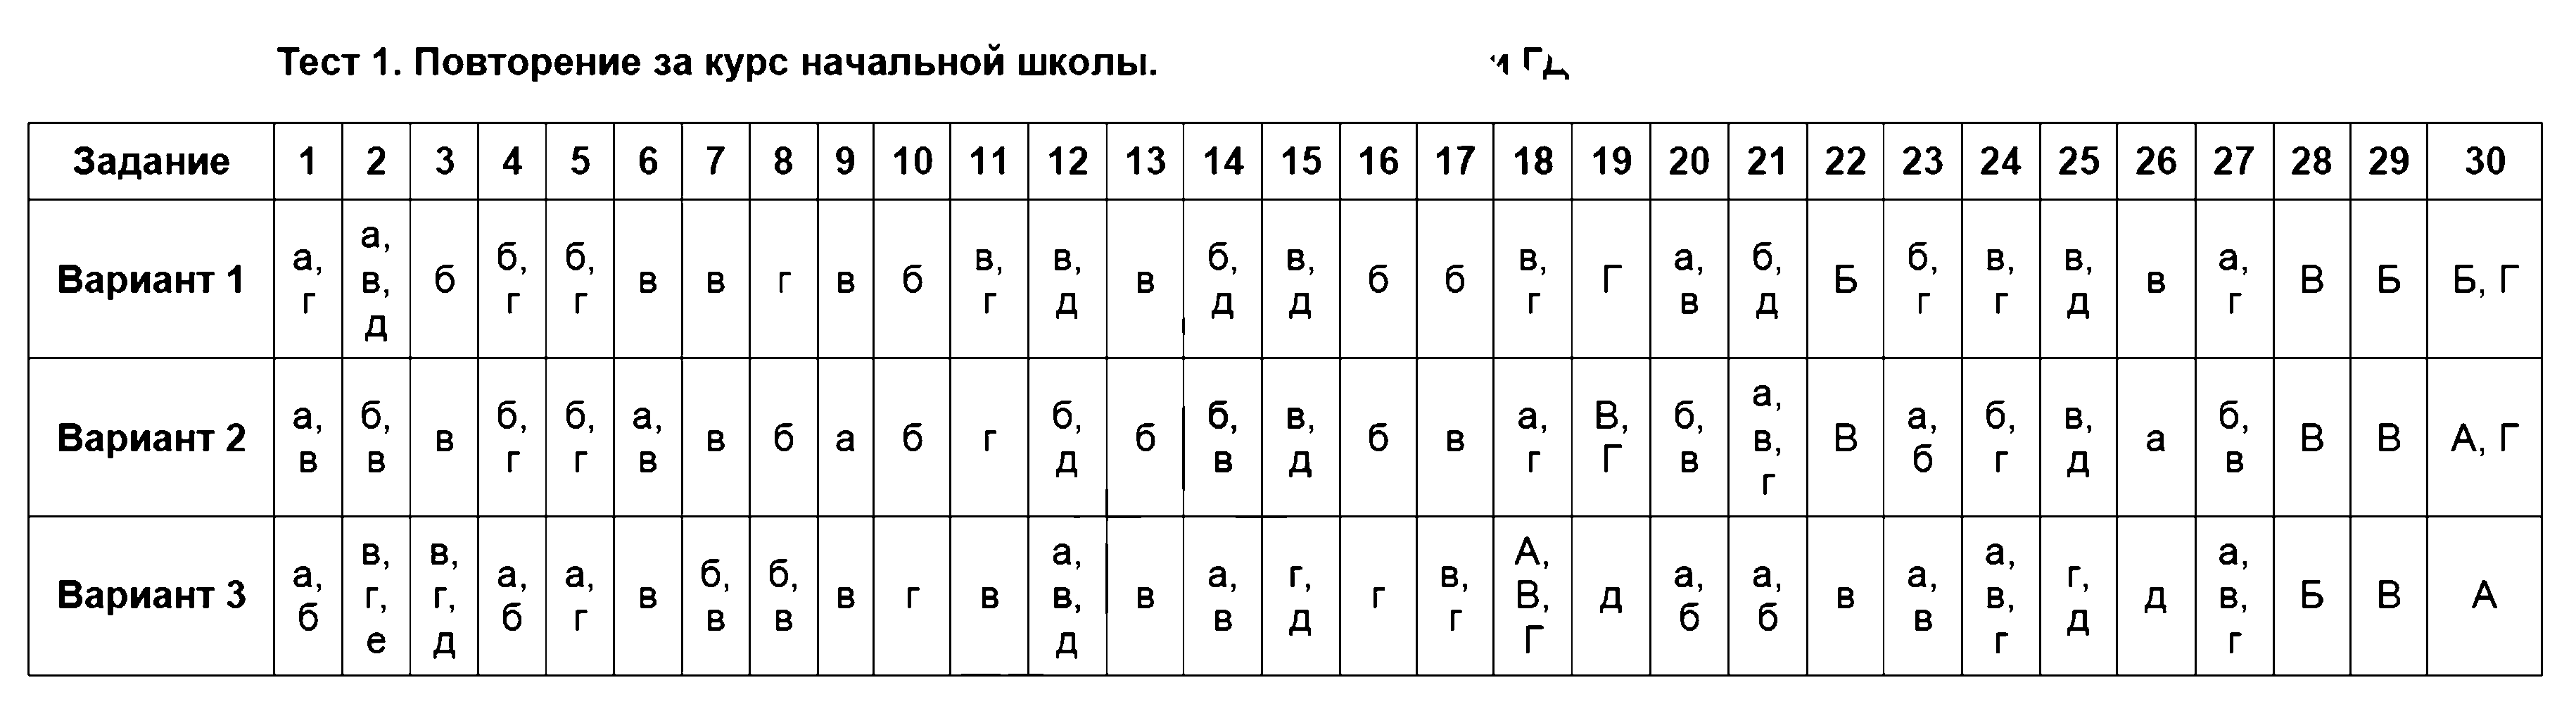 ГДЗ Русский язык 5 класс - Тест 1. Повторение за курс начальной школы